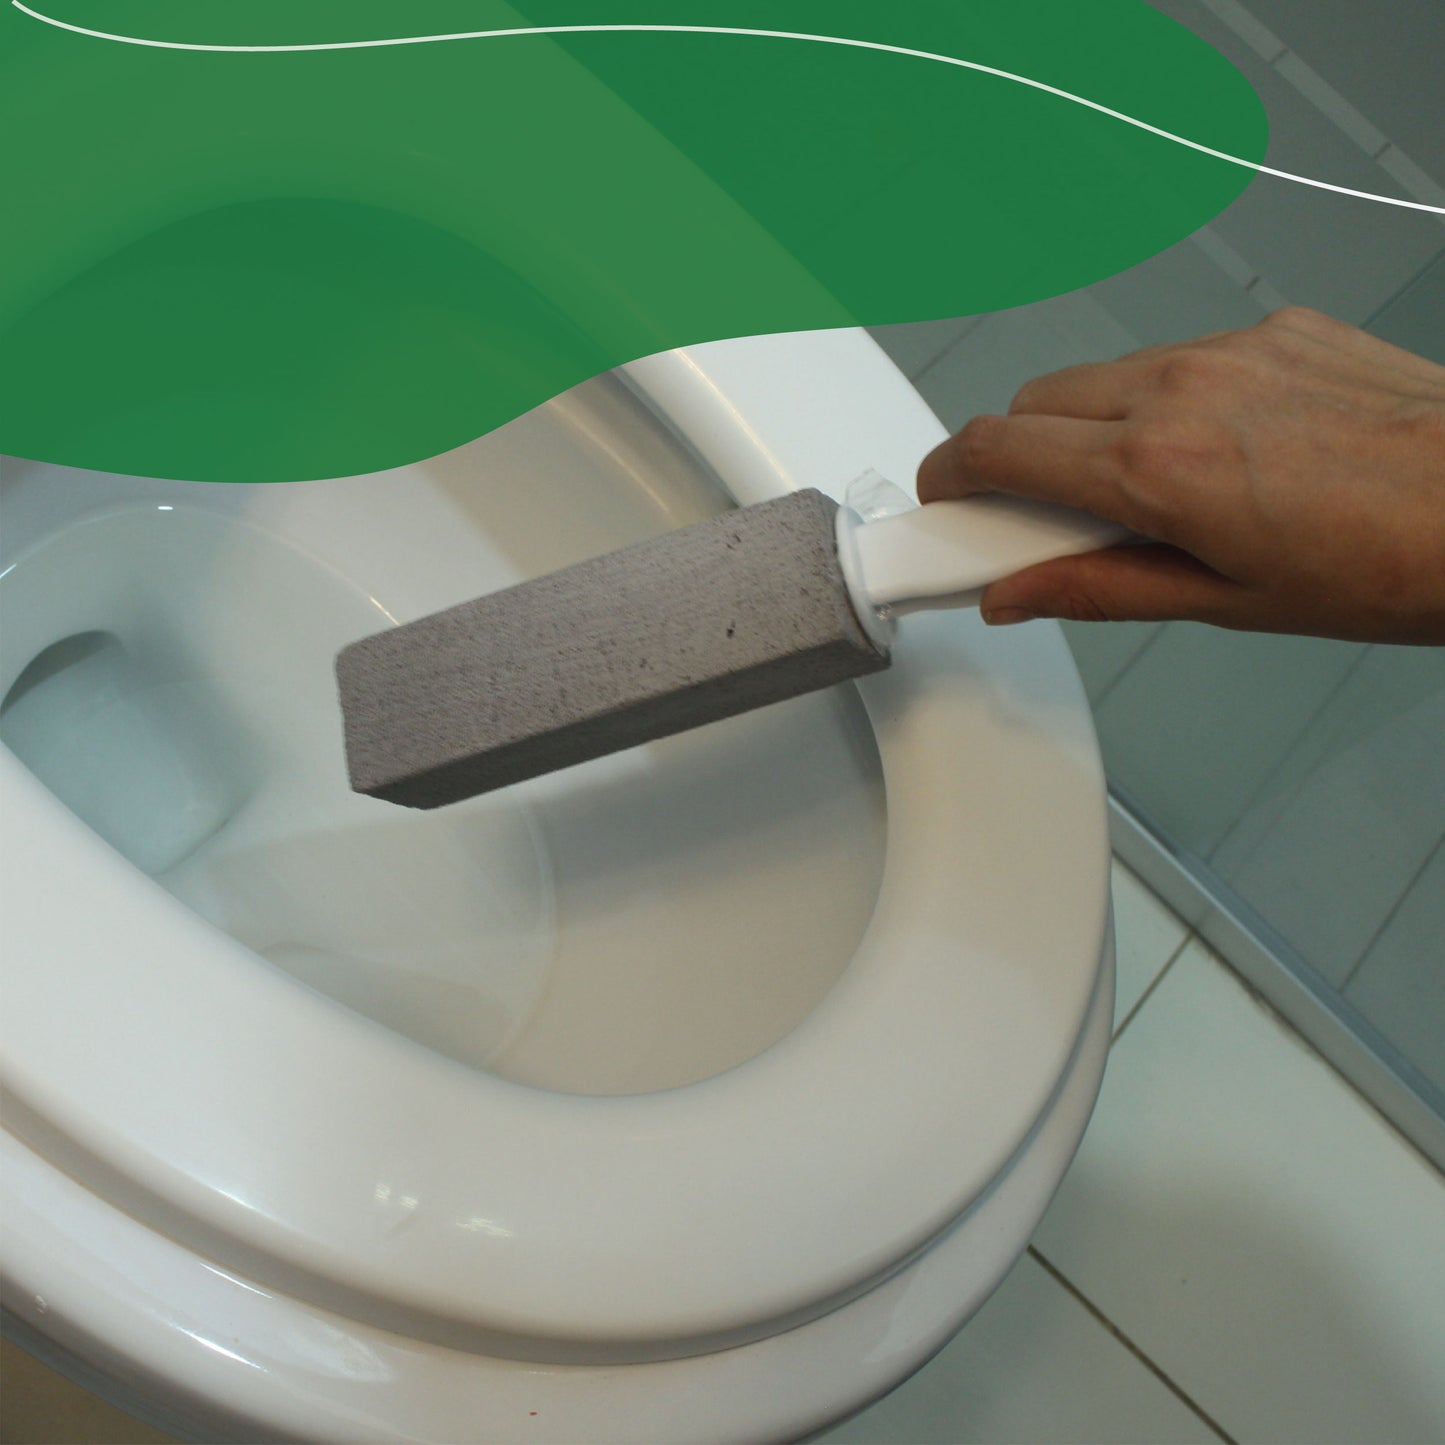 Kit Piedra pómez con agarradera para limpiar el baño - Pómez - Ideal para wc's, lavamanos, azulejos - Quita callos - Hecha de vidrio 100% reciclado.